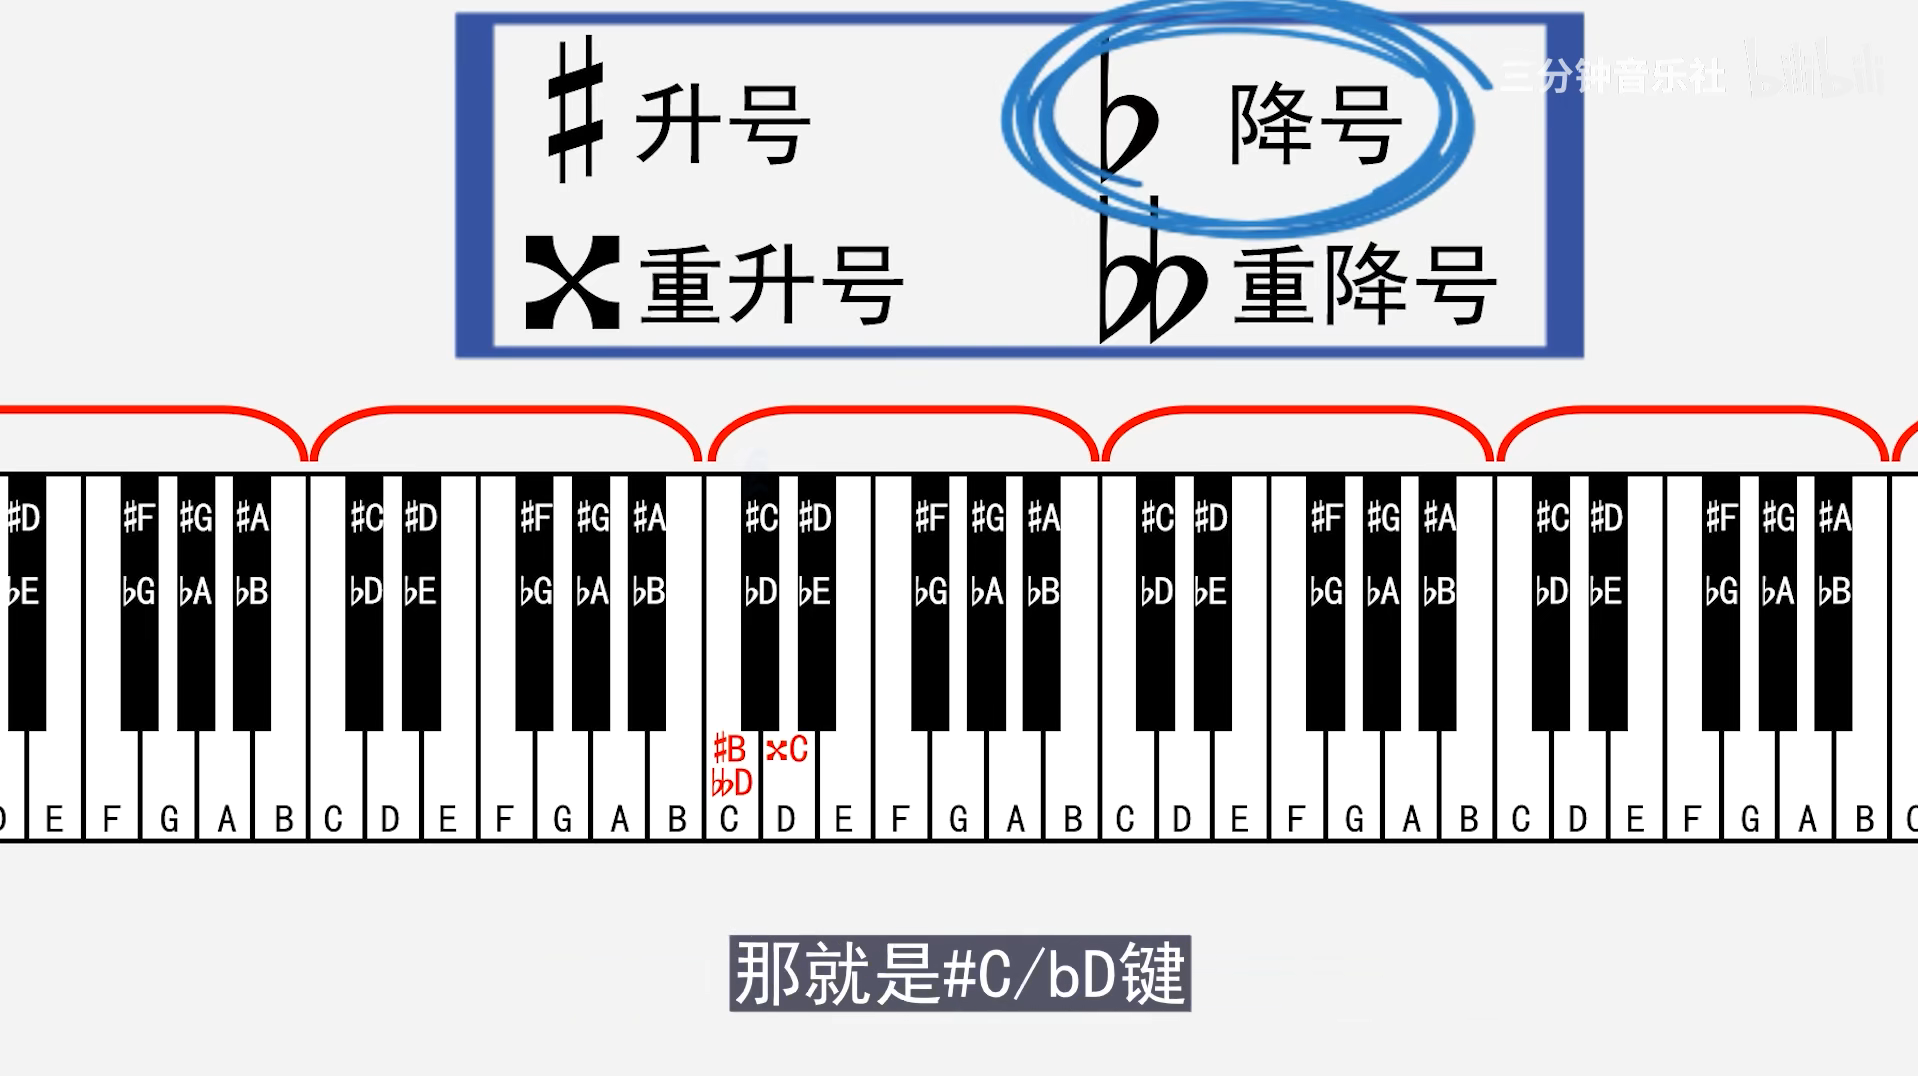 钢琴有9个组,一共88个按键,7*12=84 3 1=88一组:七个白键 5个黑键音名